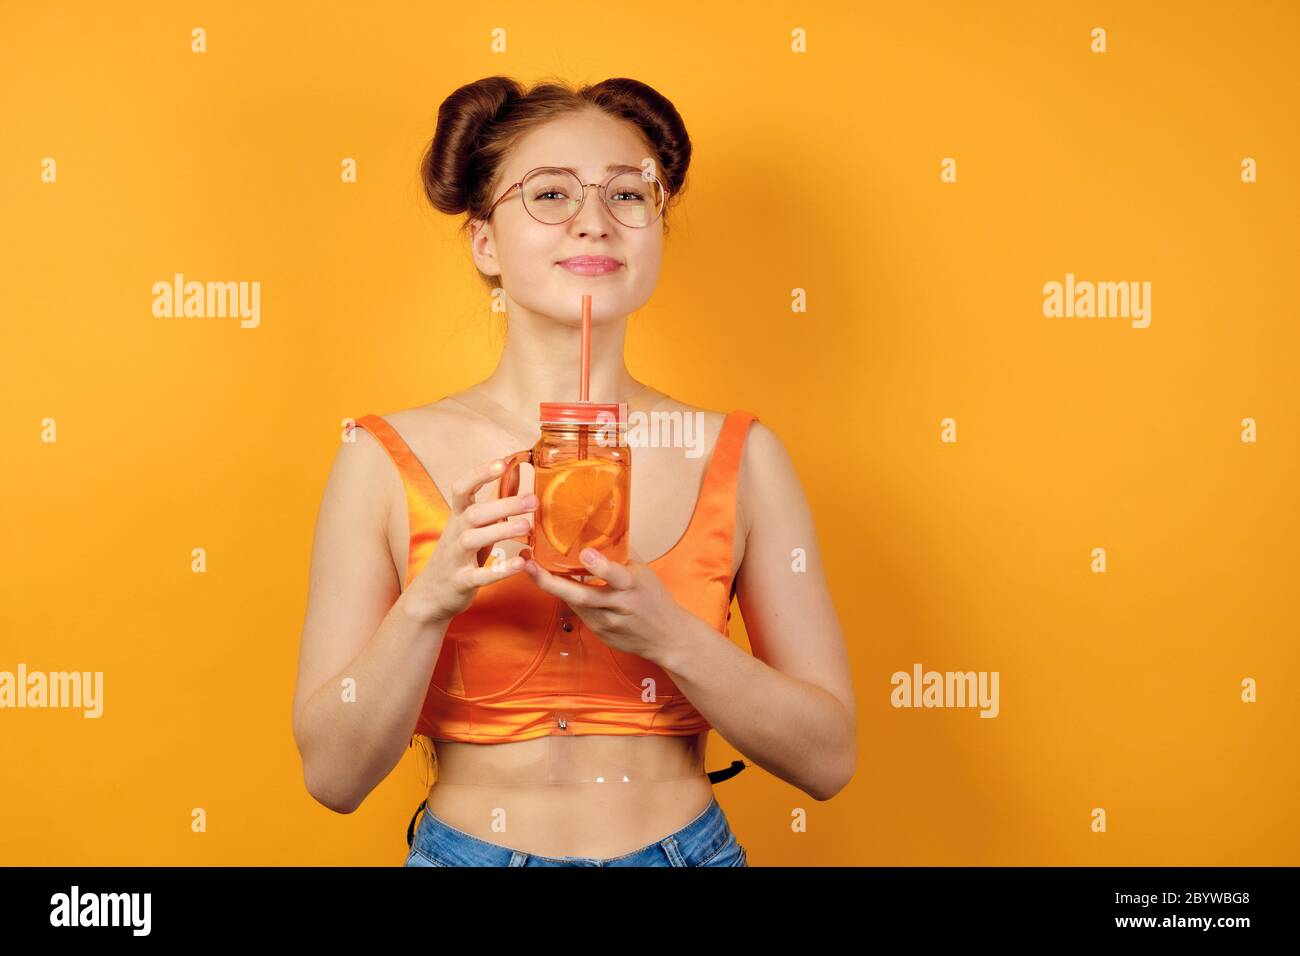 Une fille aux cheveux rouges en verres ronds et un haut orange est debout sur un fond jaune, souriant joli avec une limonade dans les mains Banque D'Images